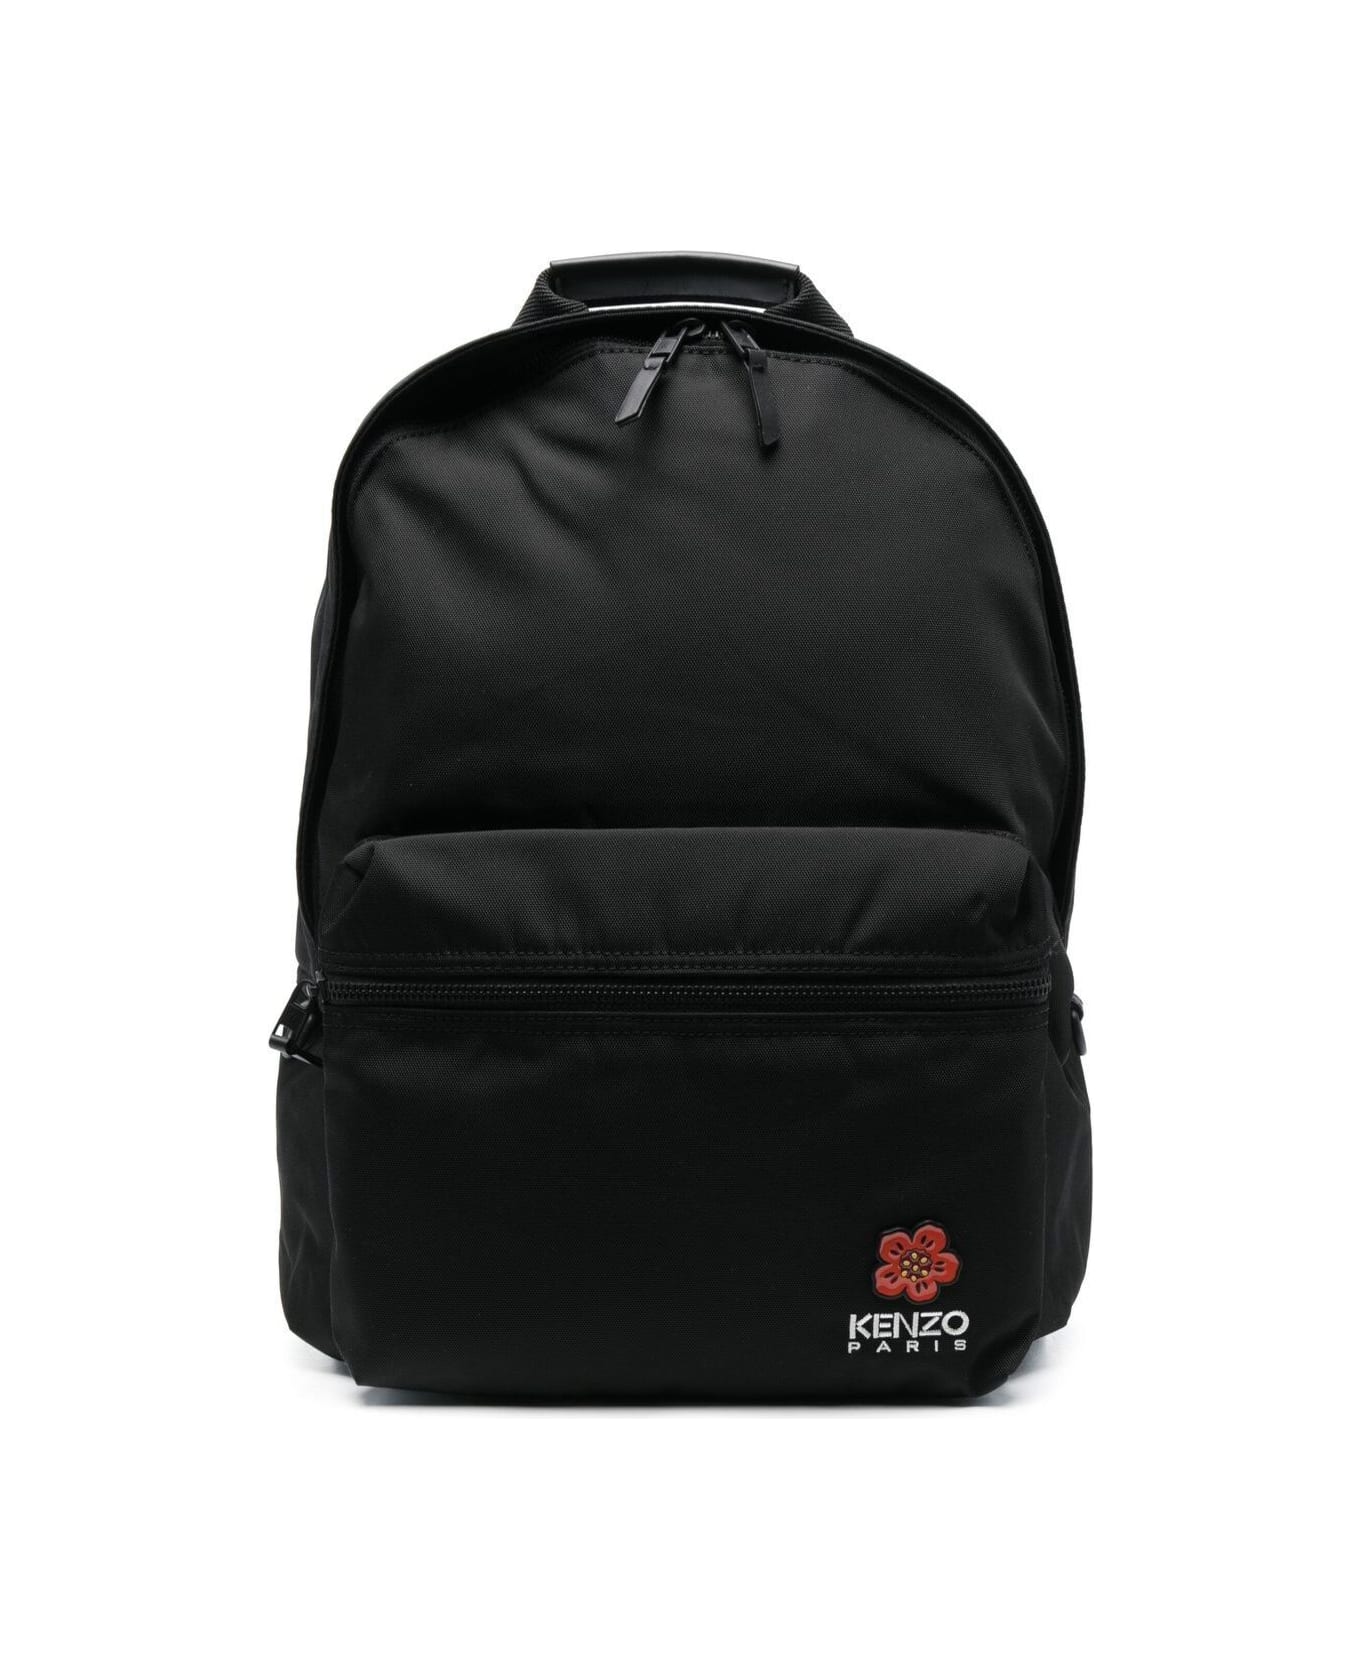 Kenzo Backpack - Black